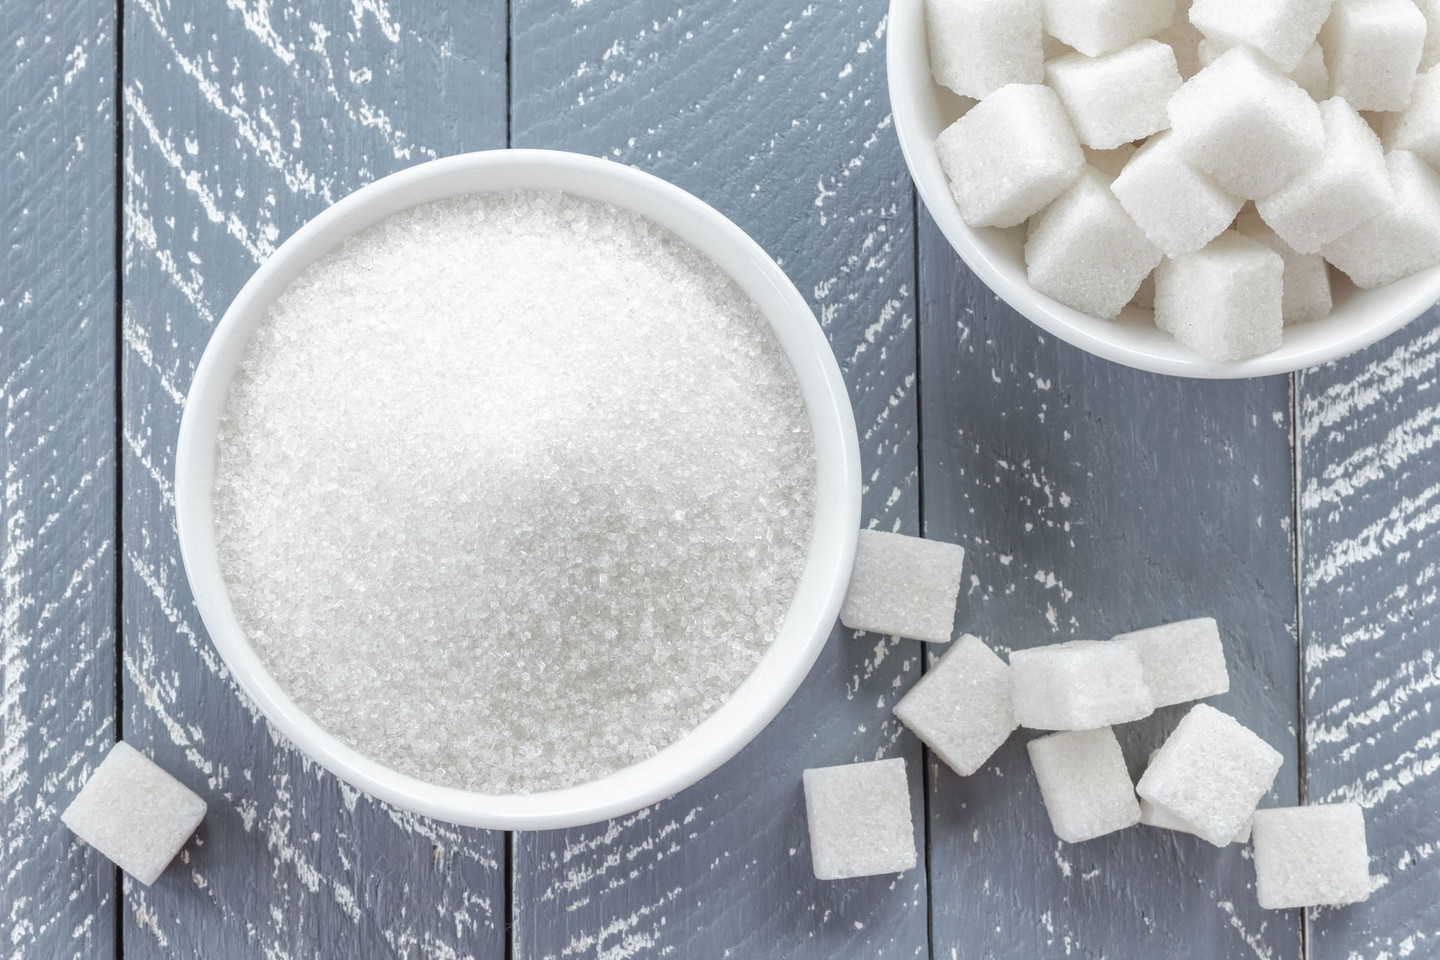 Tyrimas aiškiai parodė, kad cukrus neigiamai veikia medžiagų apykaitą.<br>123rf nuotr.